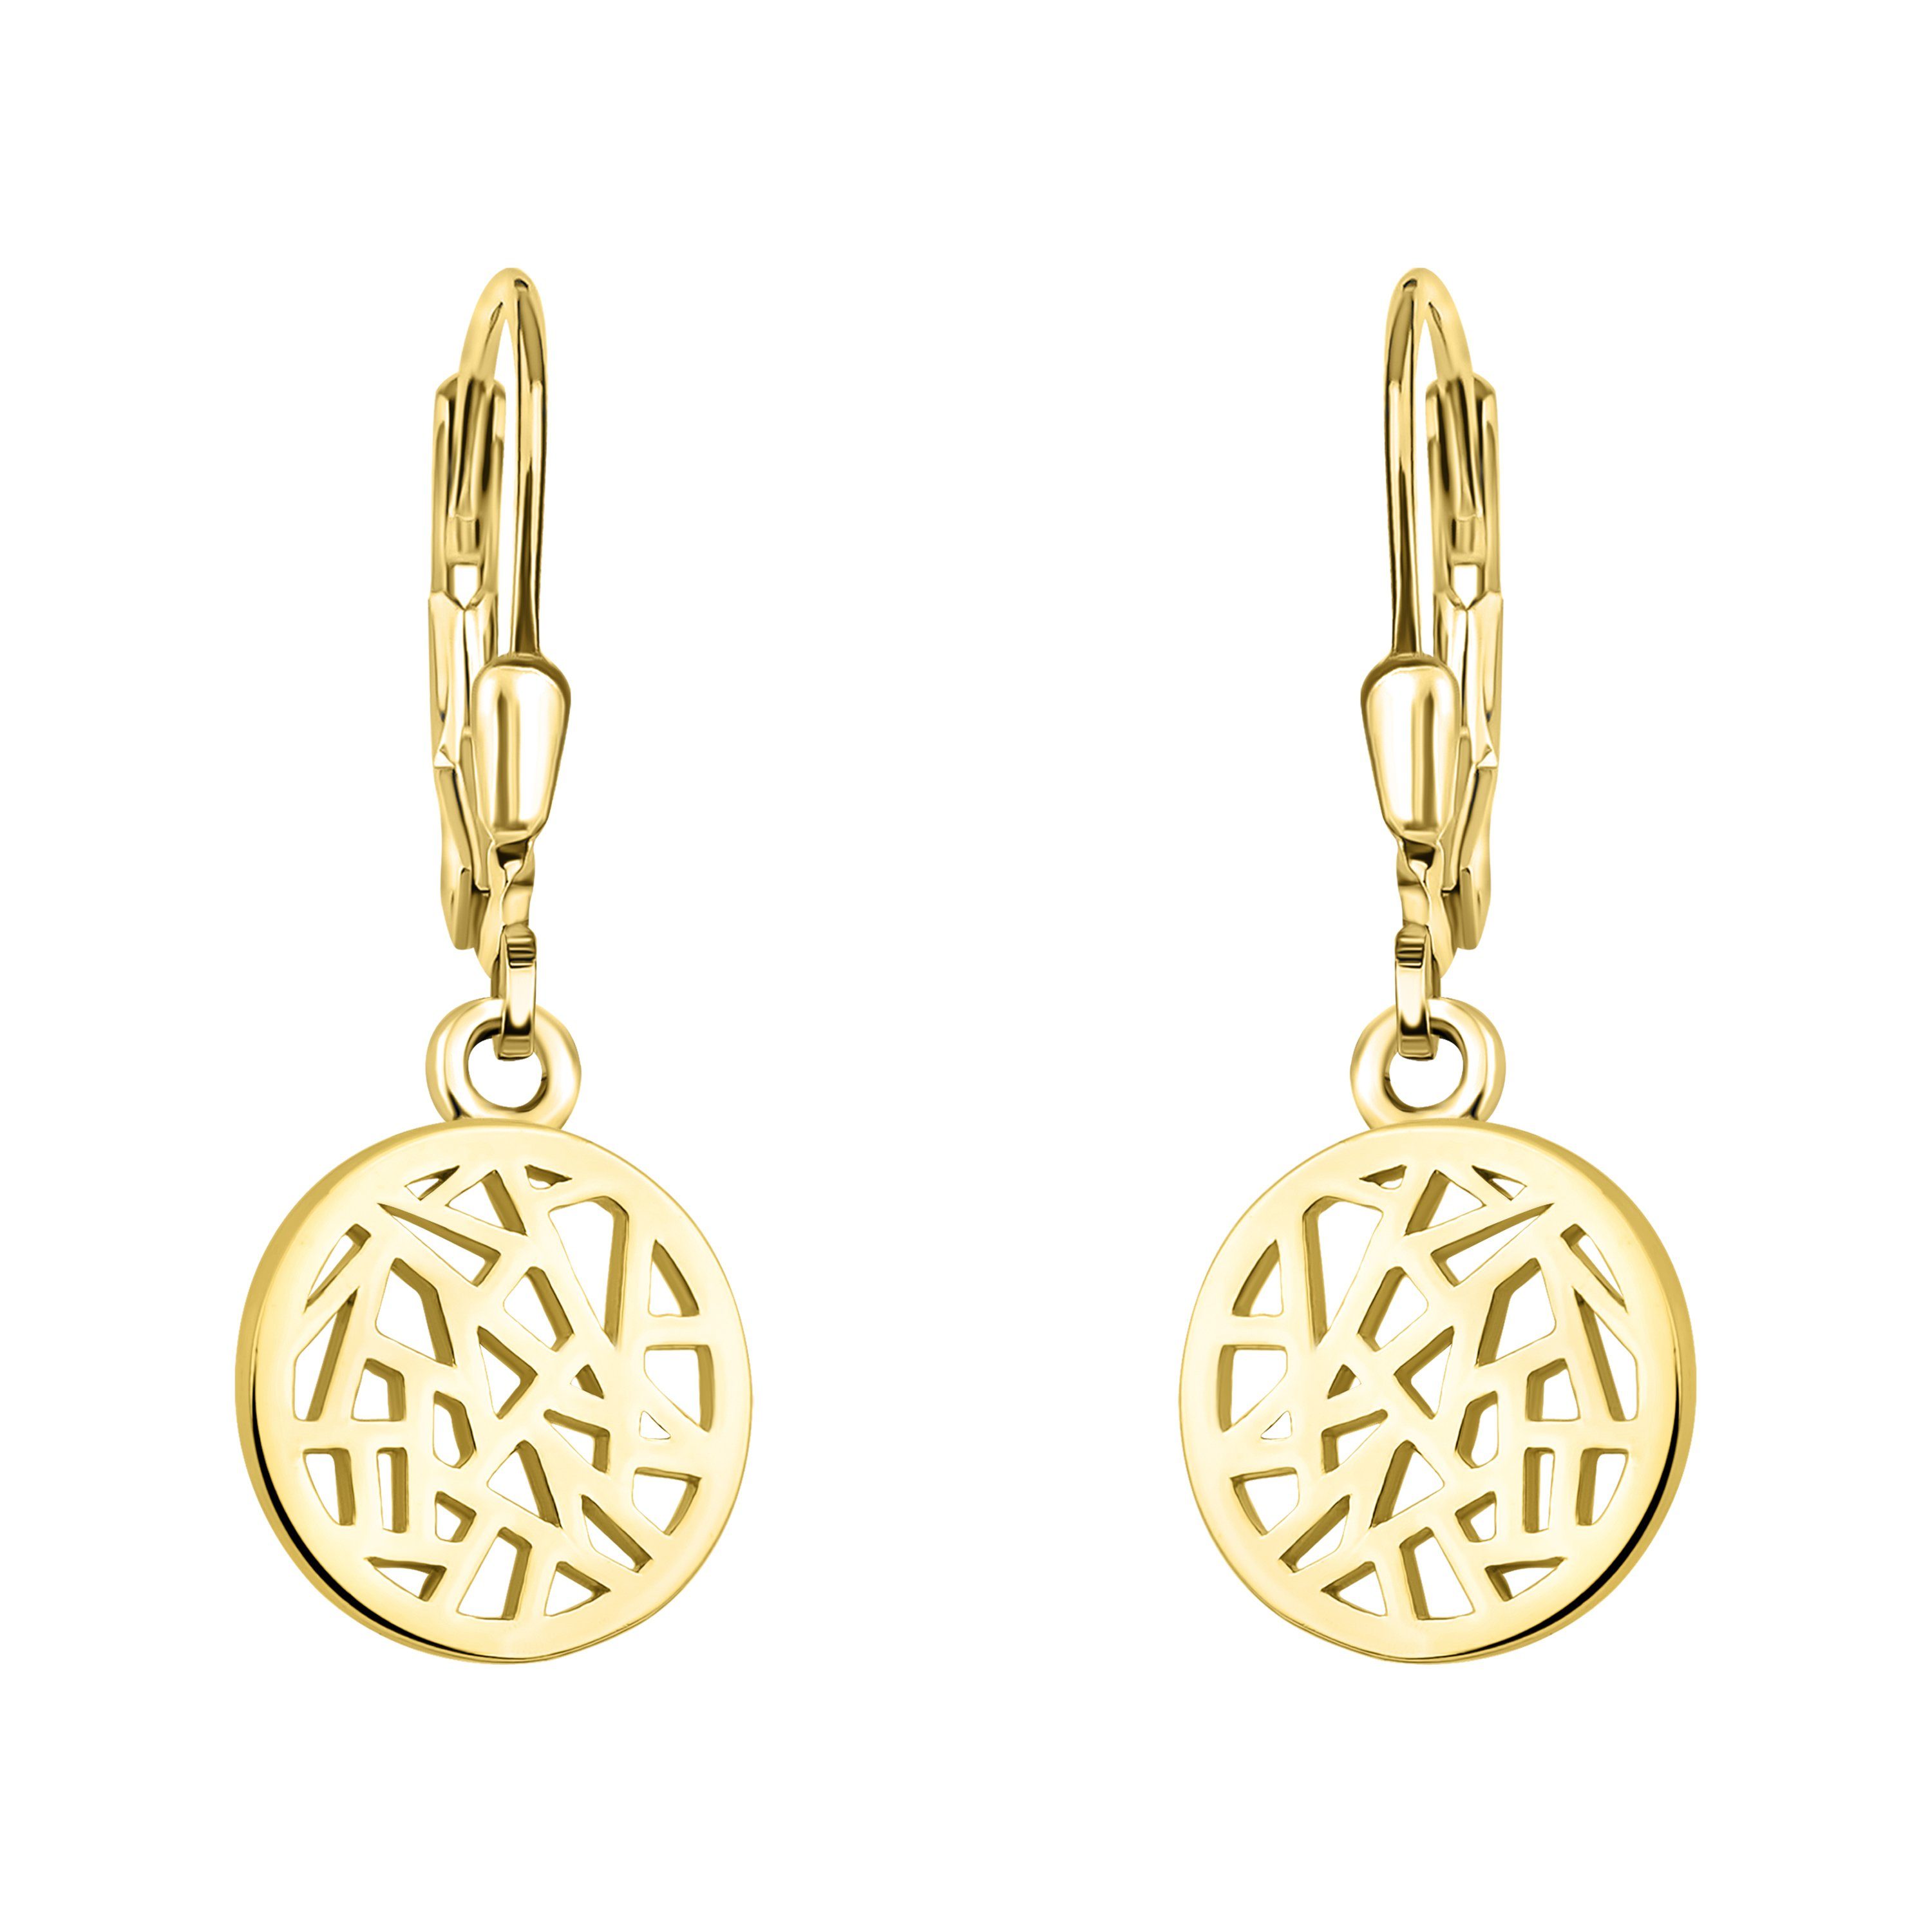 Sofia Milani Paar Ohrhänger Ornament Kreis, 925 Silber Damen Schmuck gold